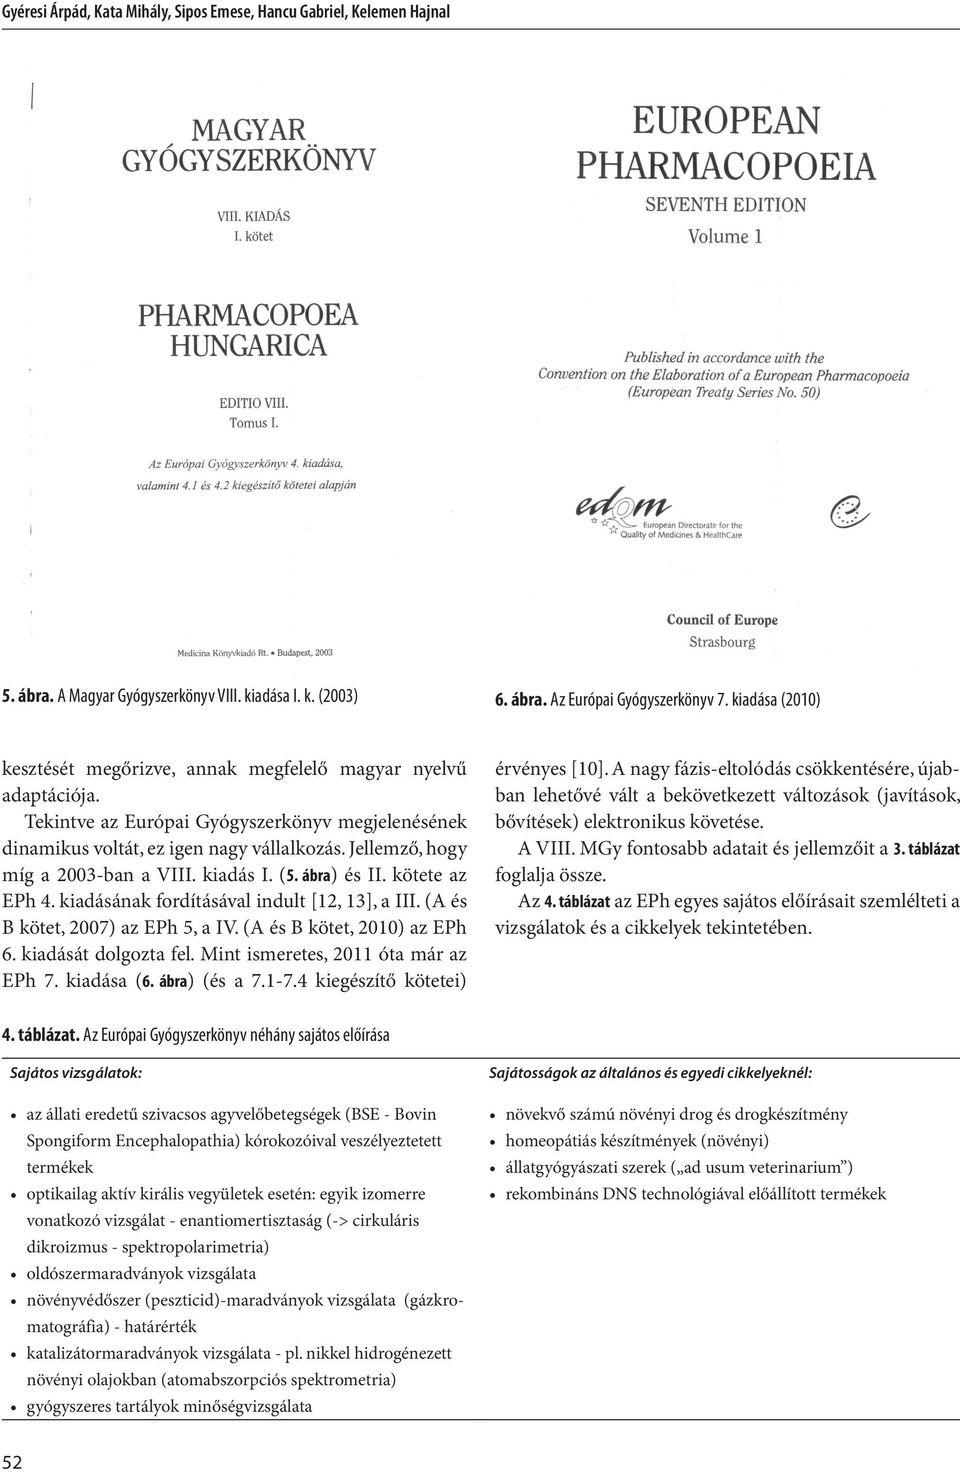 Jellemző, hogy míg a 2003-ban a VIII. kiadás I. (5. ábra) és II. kötete az EPh 4. kiadásának fordításával indult [12, 13], a III. (A és B kötet, 2007) az EPh 5, a IV. (A és B kötet, 2010) az EPh 6.